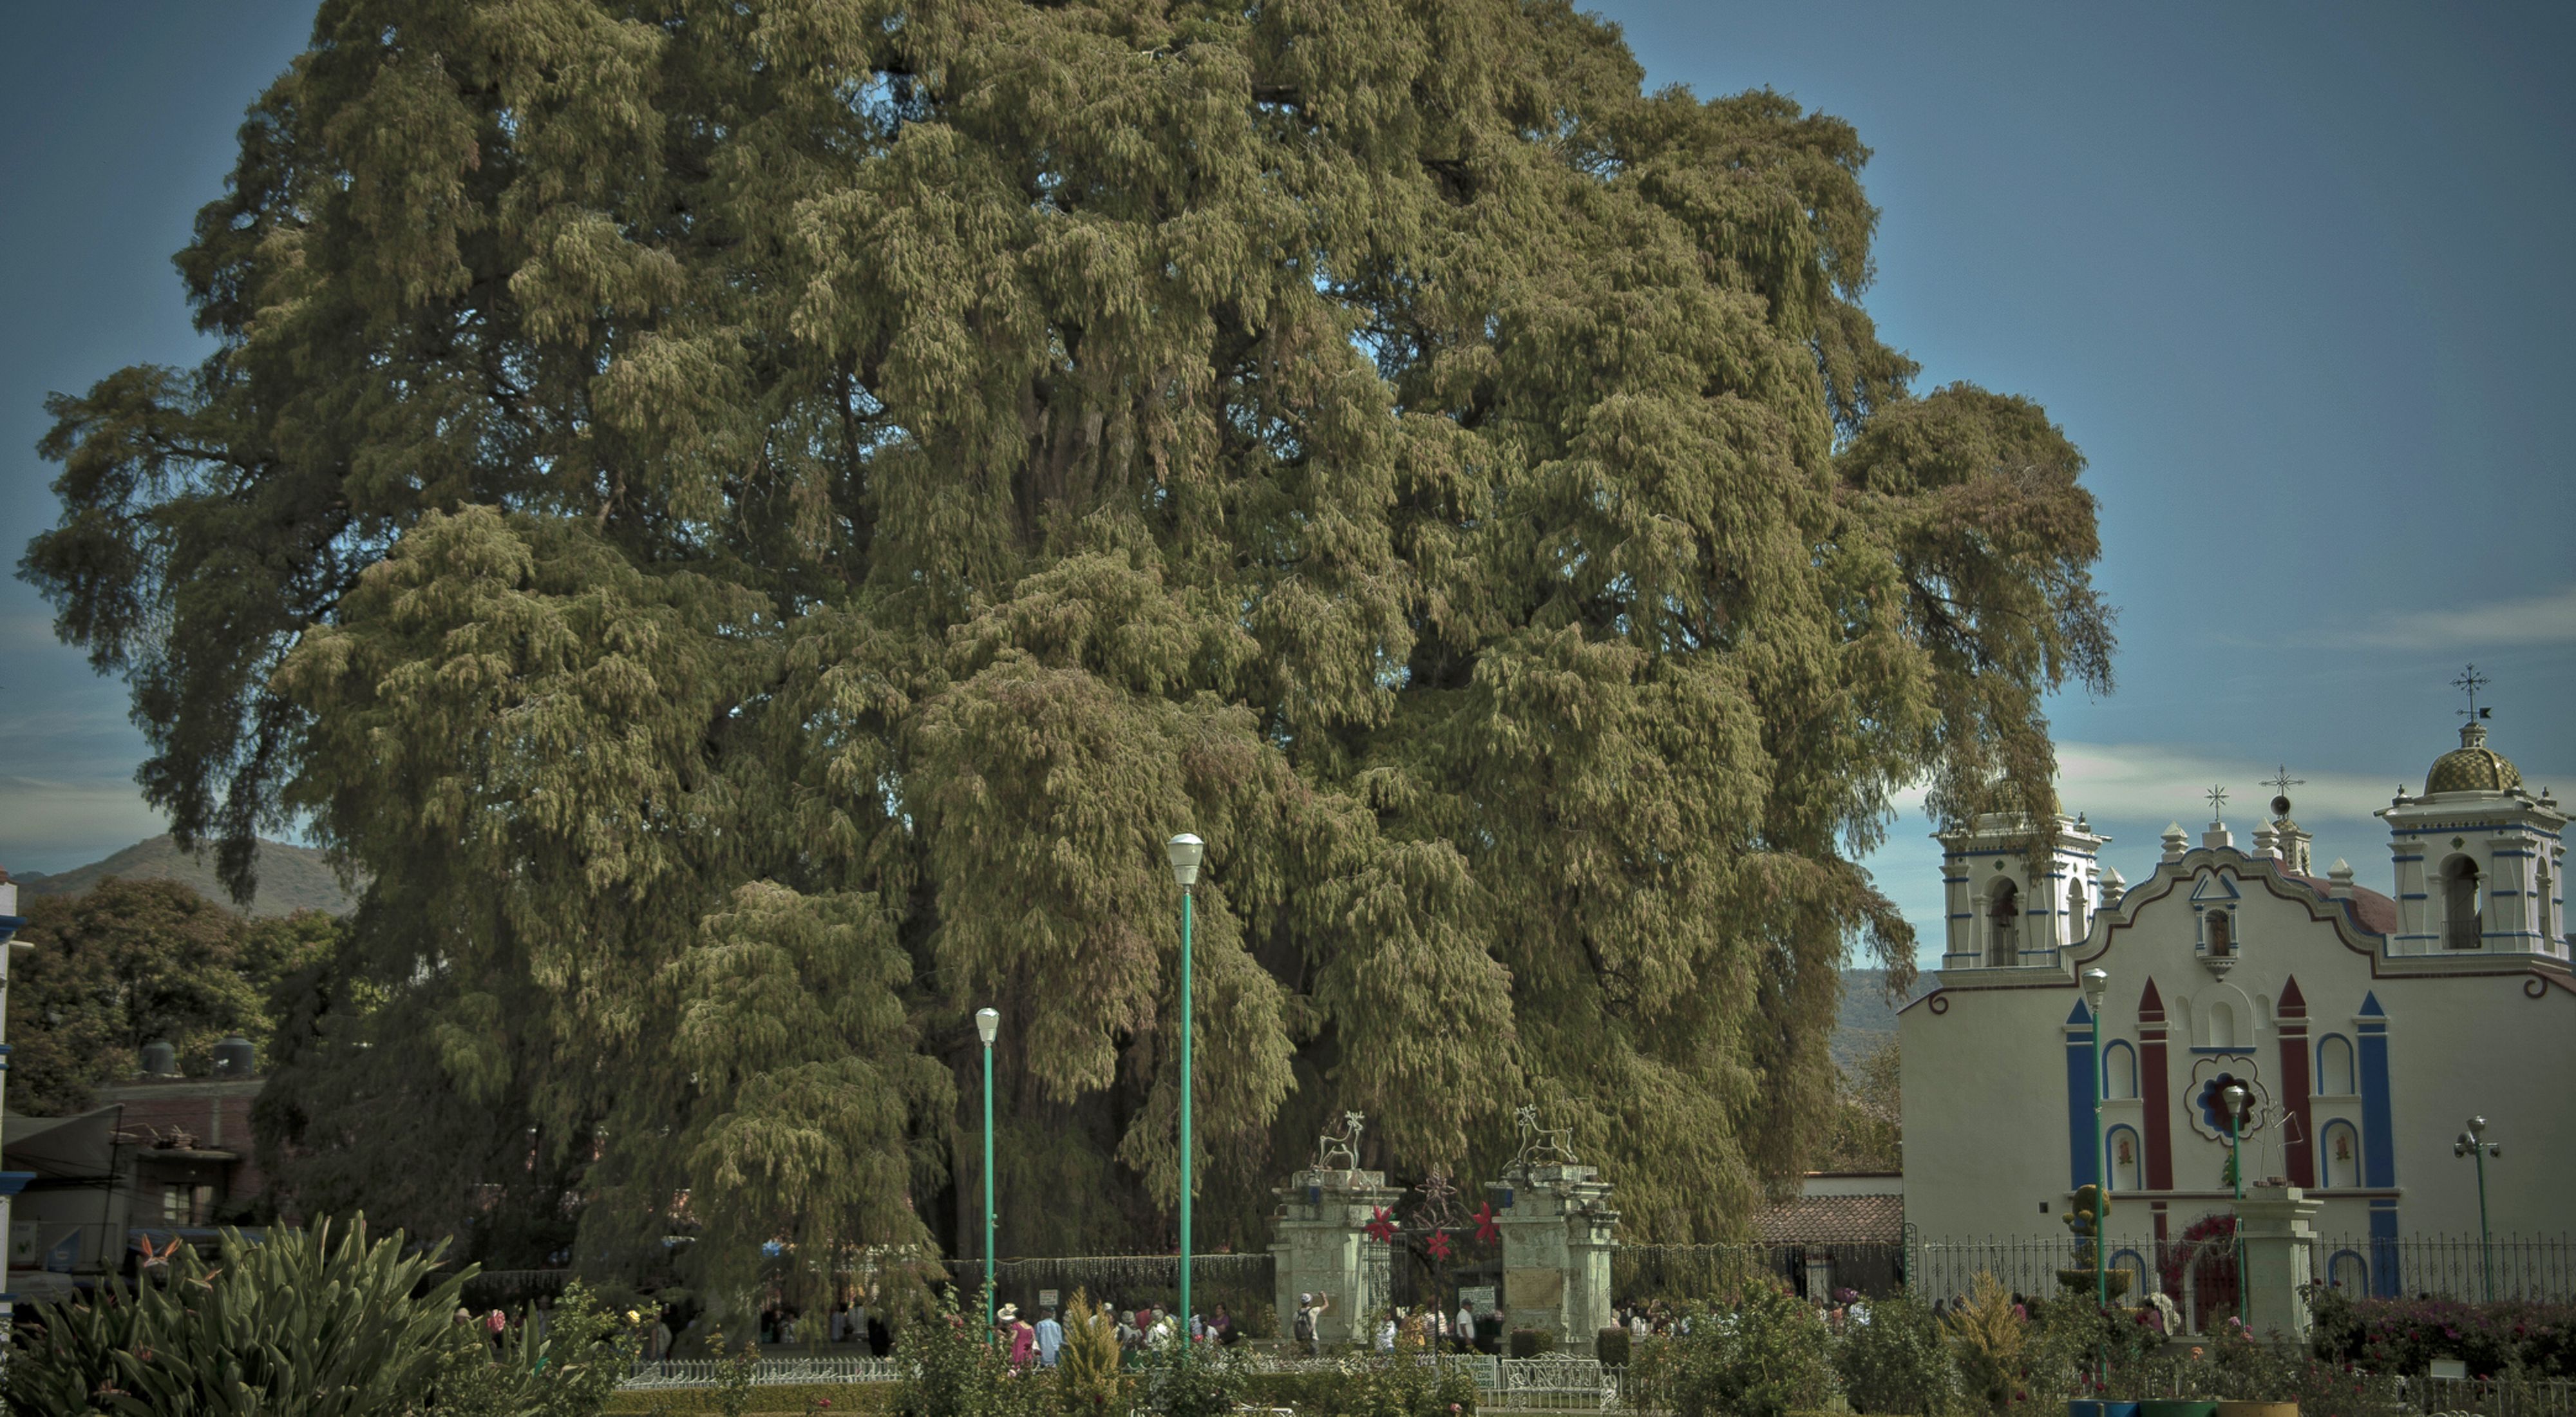 Las ramas de un enorme ciprés de Moctezuma se extienden hacia el cielo, casi ocultando un edificio ornamentado junto al árbol.